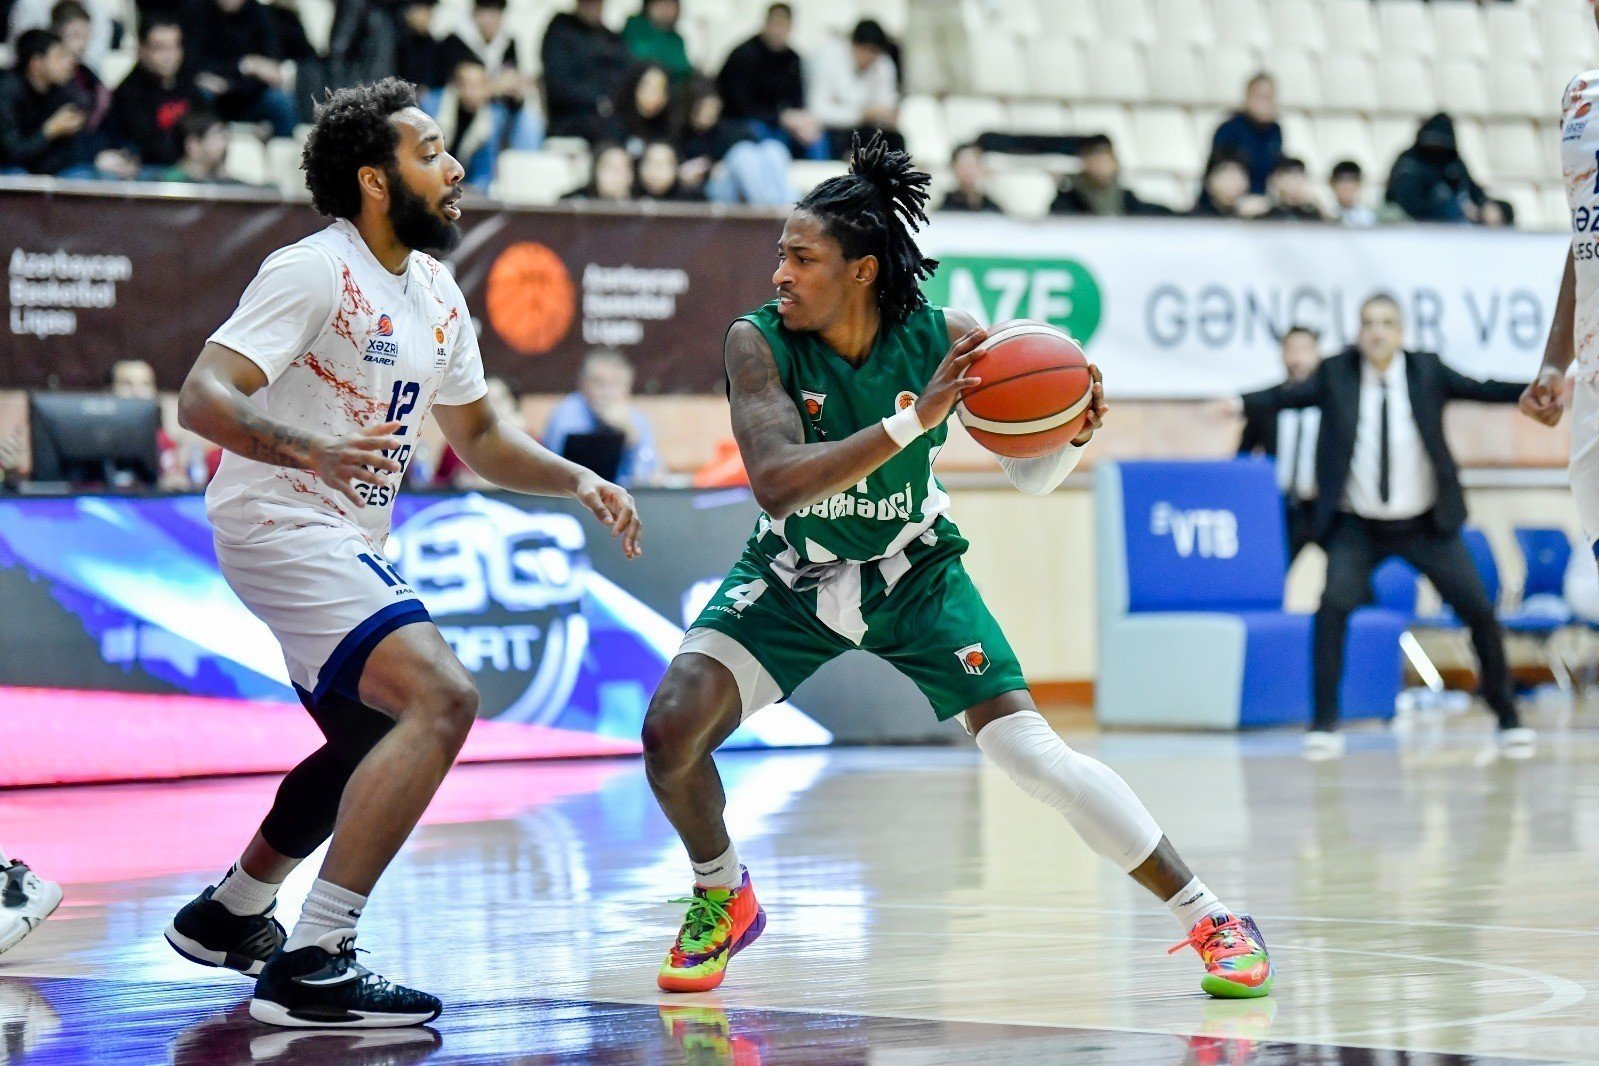 "Хазри" стал последним полуфиналистом азербайджанской баскетбольной лиги